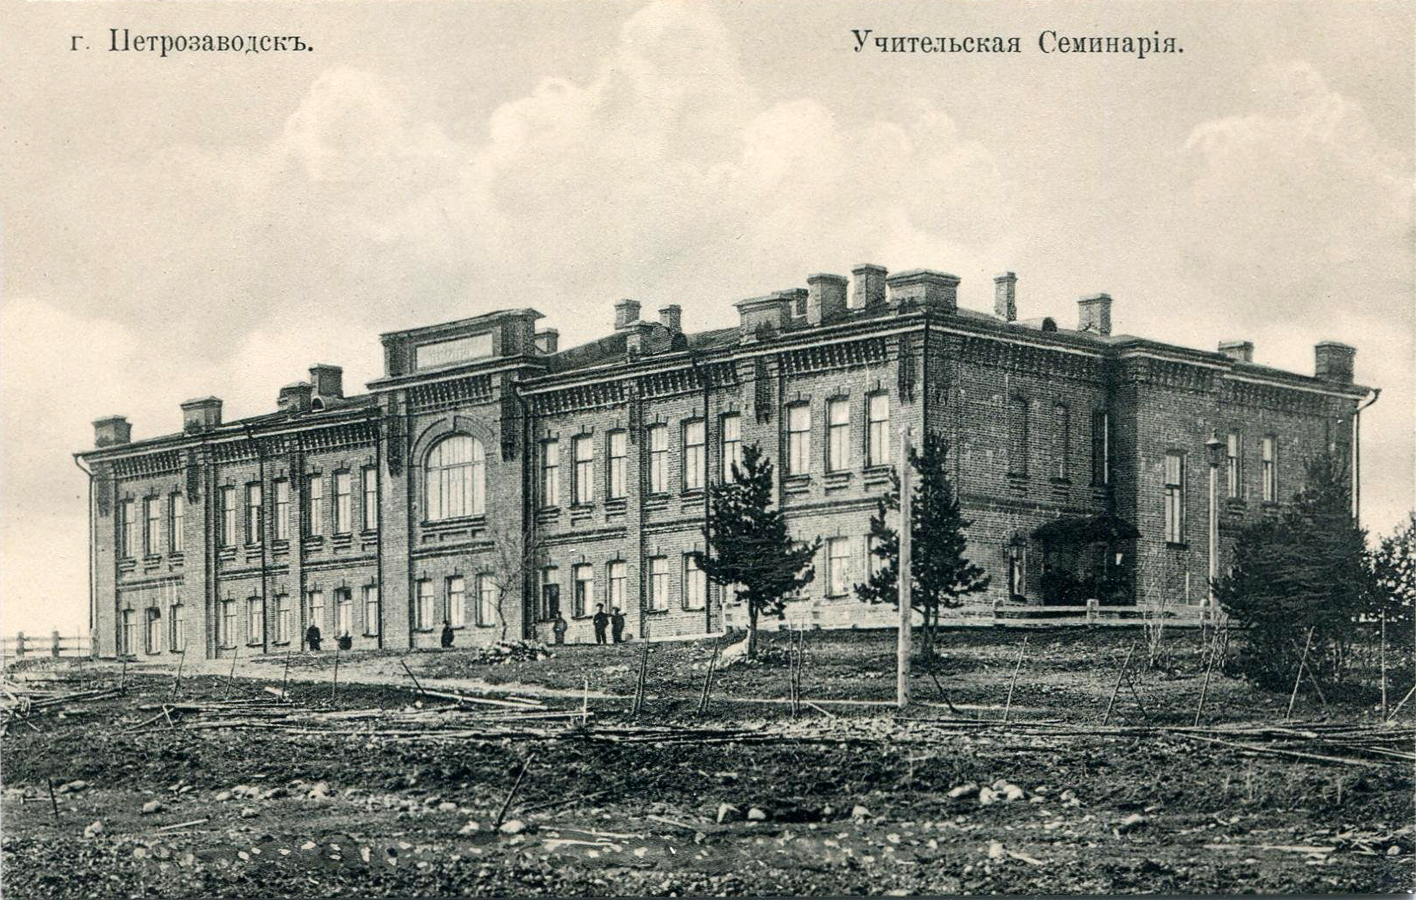 1910-е годы. Петрозаводск. Здание учительской семинарии